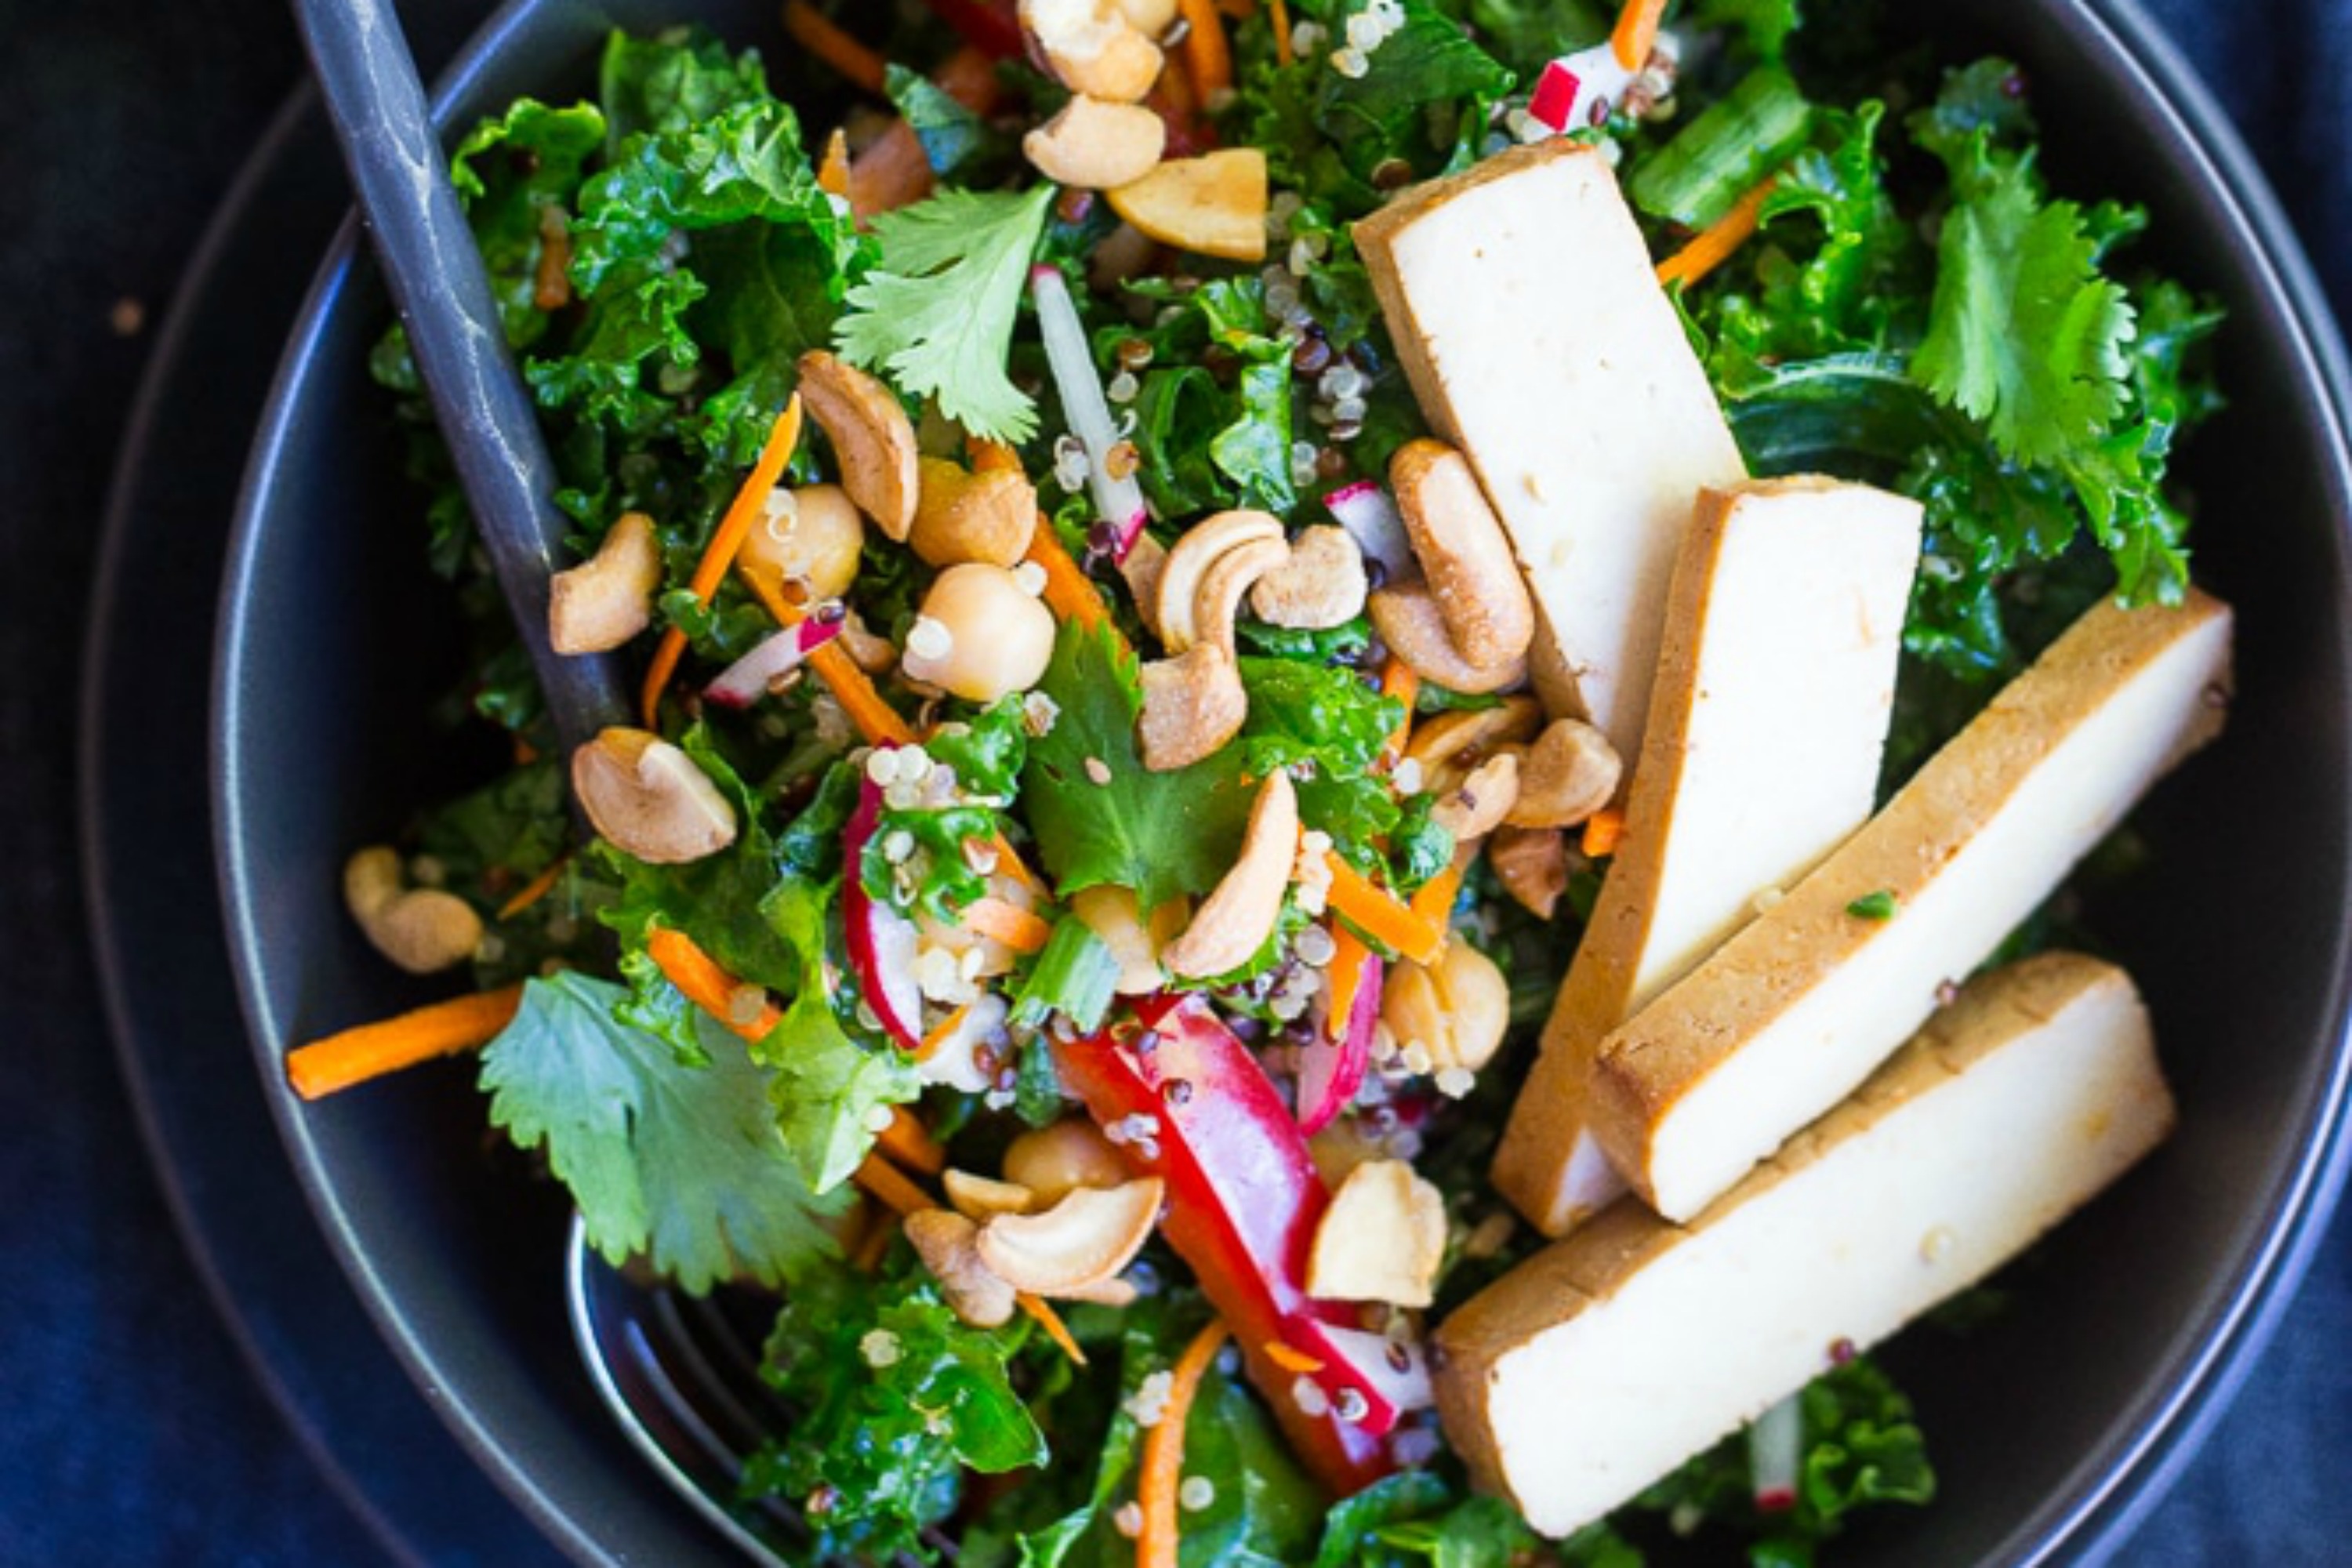 16 Satisfying Kale Salad Recipes